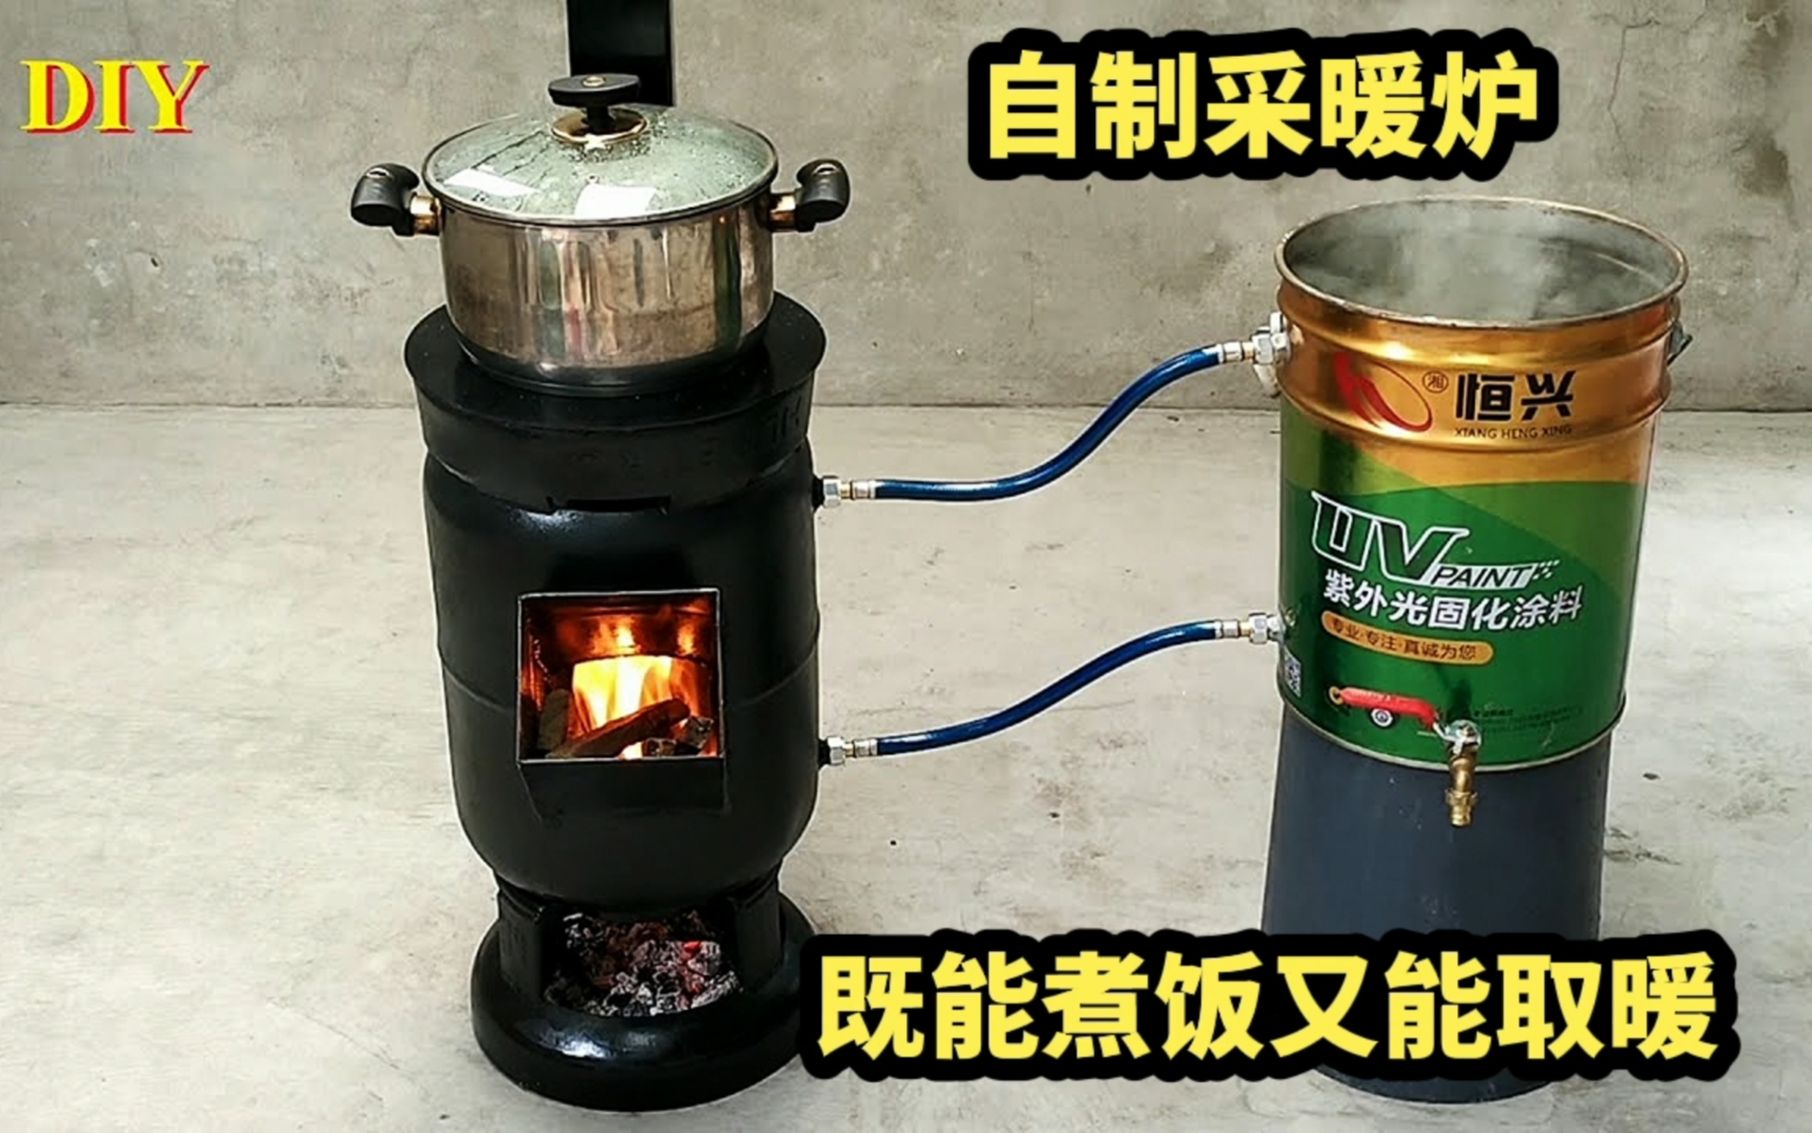 这么强大的柴火炉你见过吗？既能煮饭又能取暖，几十元就能做成